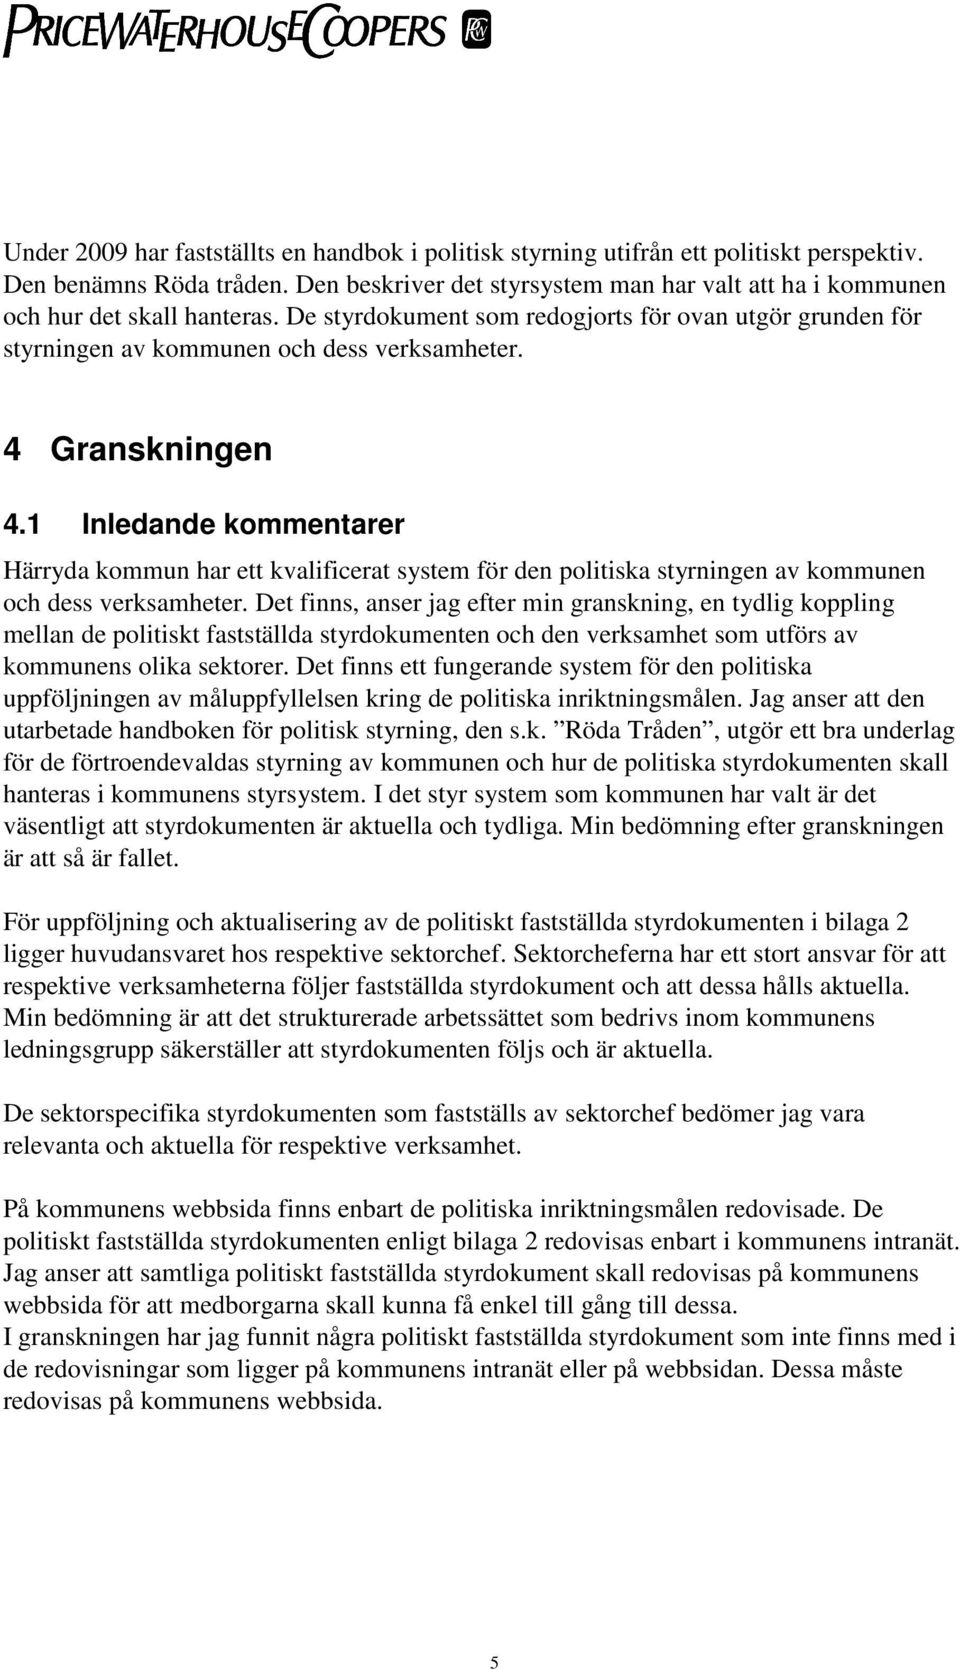 4 Granskningen 4.1 Inledande kommentarer Härryda kommun har ett kvalificerat system för den politiska styrningen av kommunen och dess verksamheter.